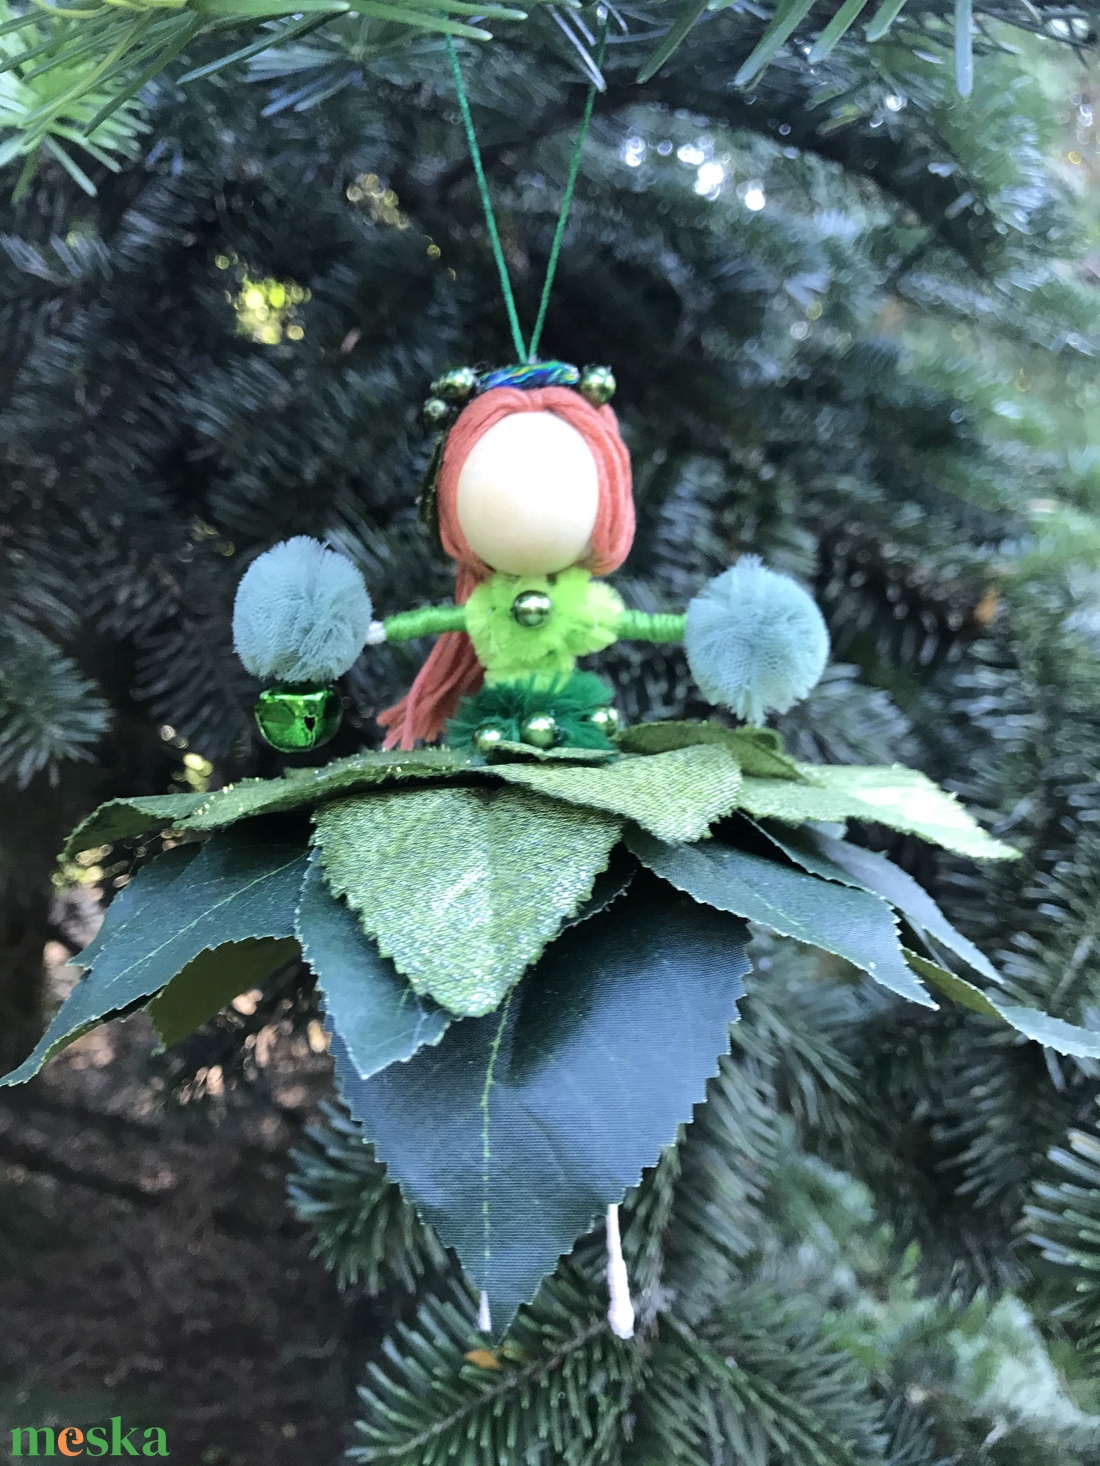 Karácsonyi dísz tündér zöld selyem gyöngy drót baba virág - karácsony - karácsonyi lakásdekoráció - karácsonyfadíszek - Meska.hu